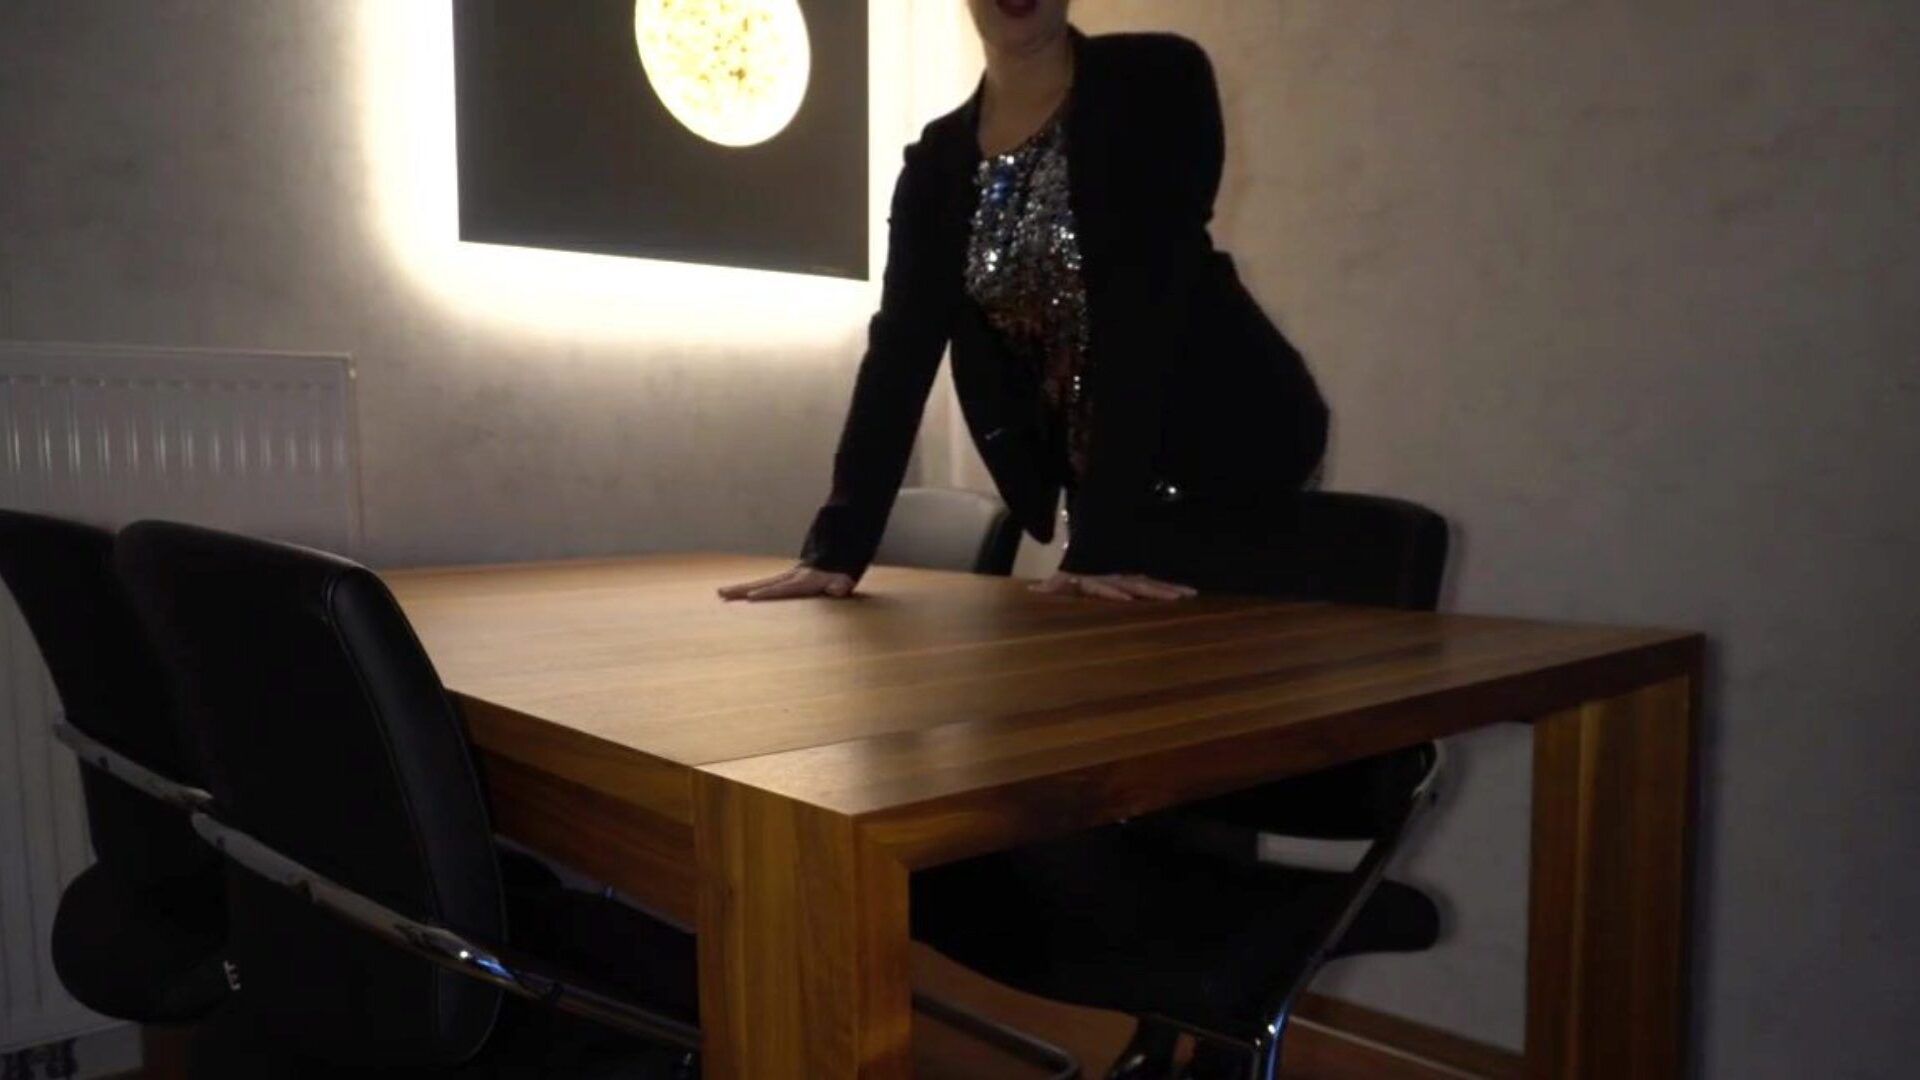 le patron baise la secrétaire analement sur la table ... regardez le patron baise la secrétaire analement sur la table - épisode business-bitch sur xhamster - la collection ultime de vidéos de tube pornographique danoises gratuites